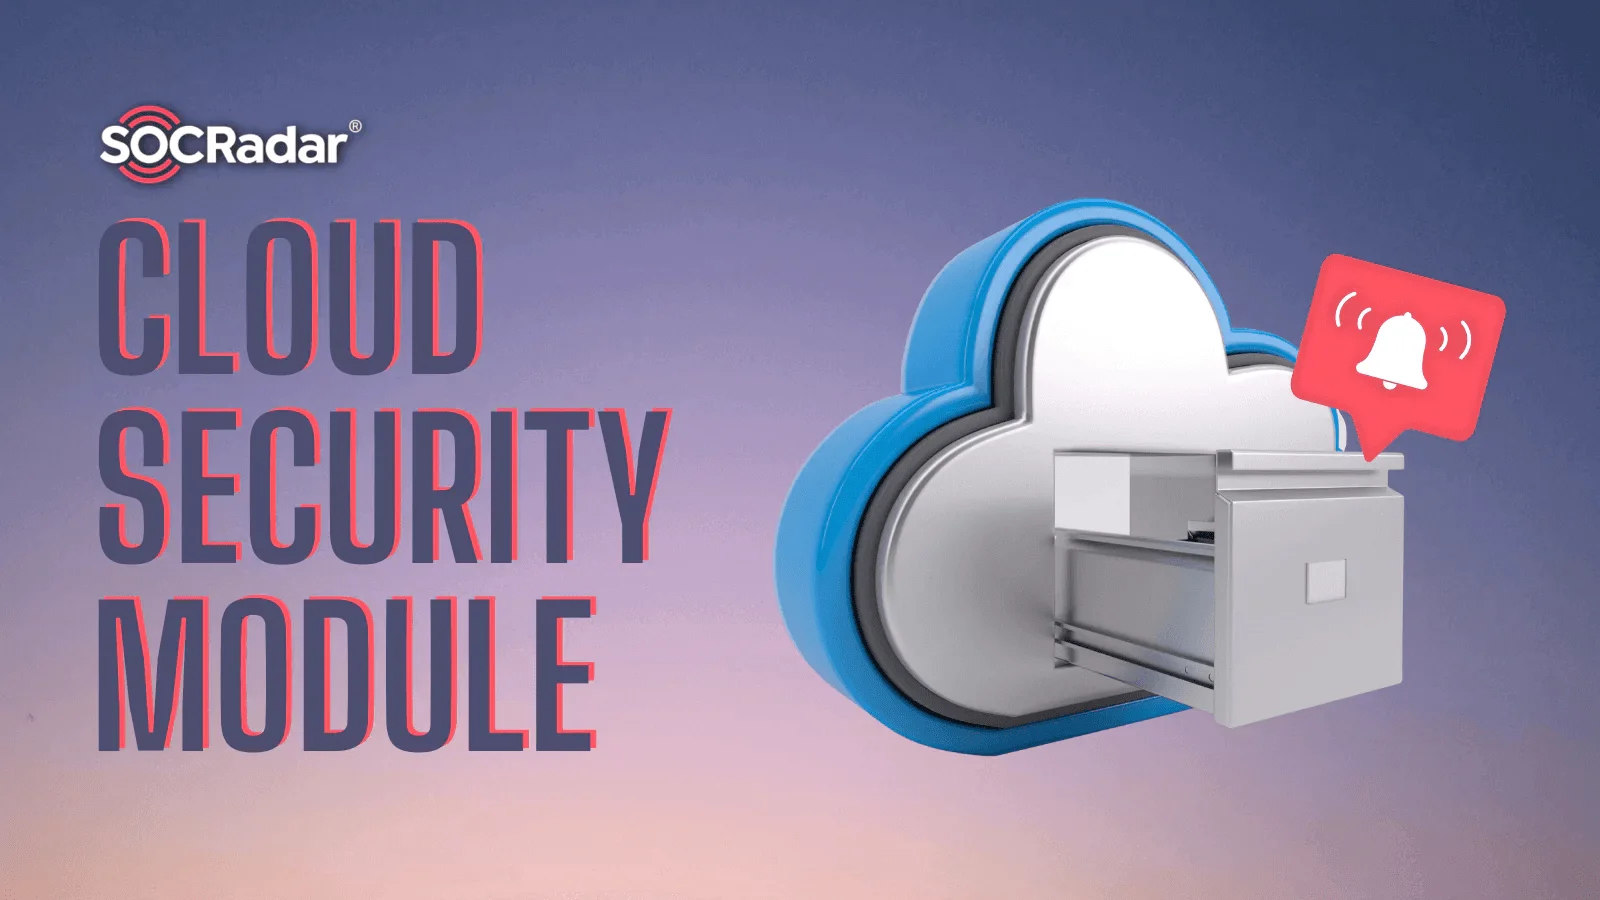 SOCRadar Cloud Security Module